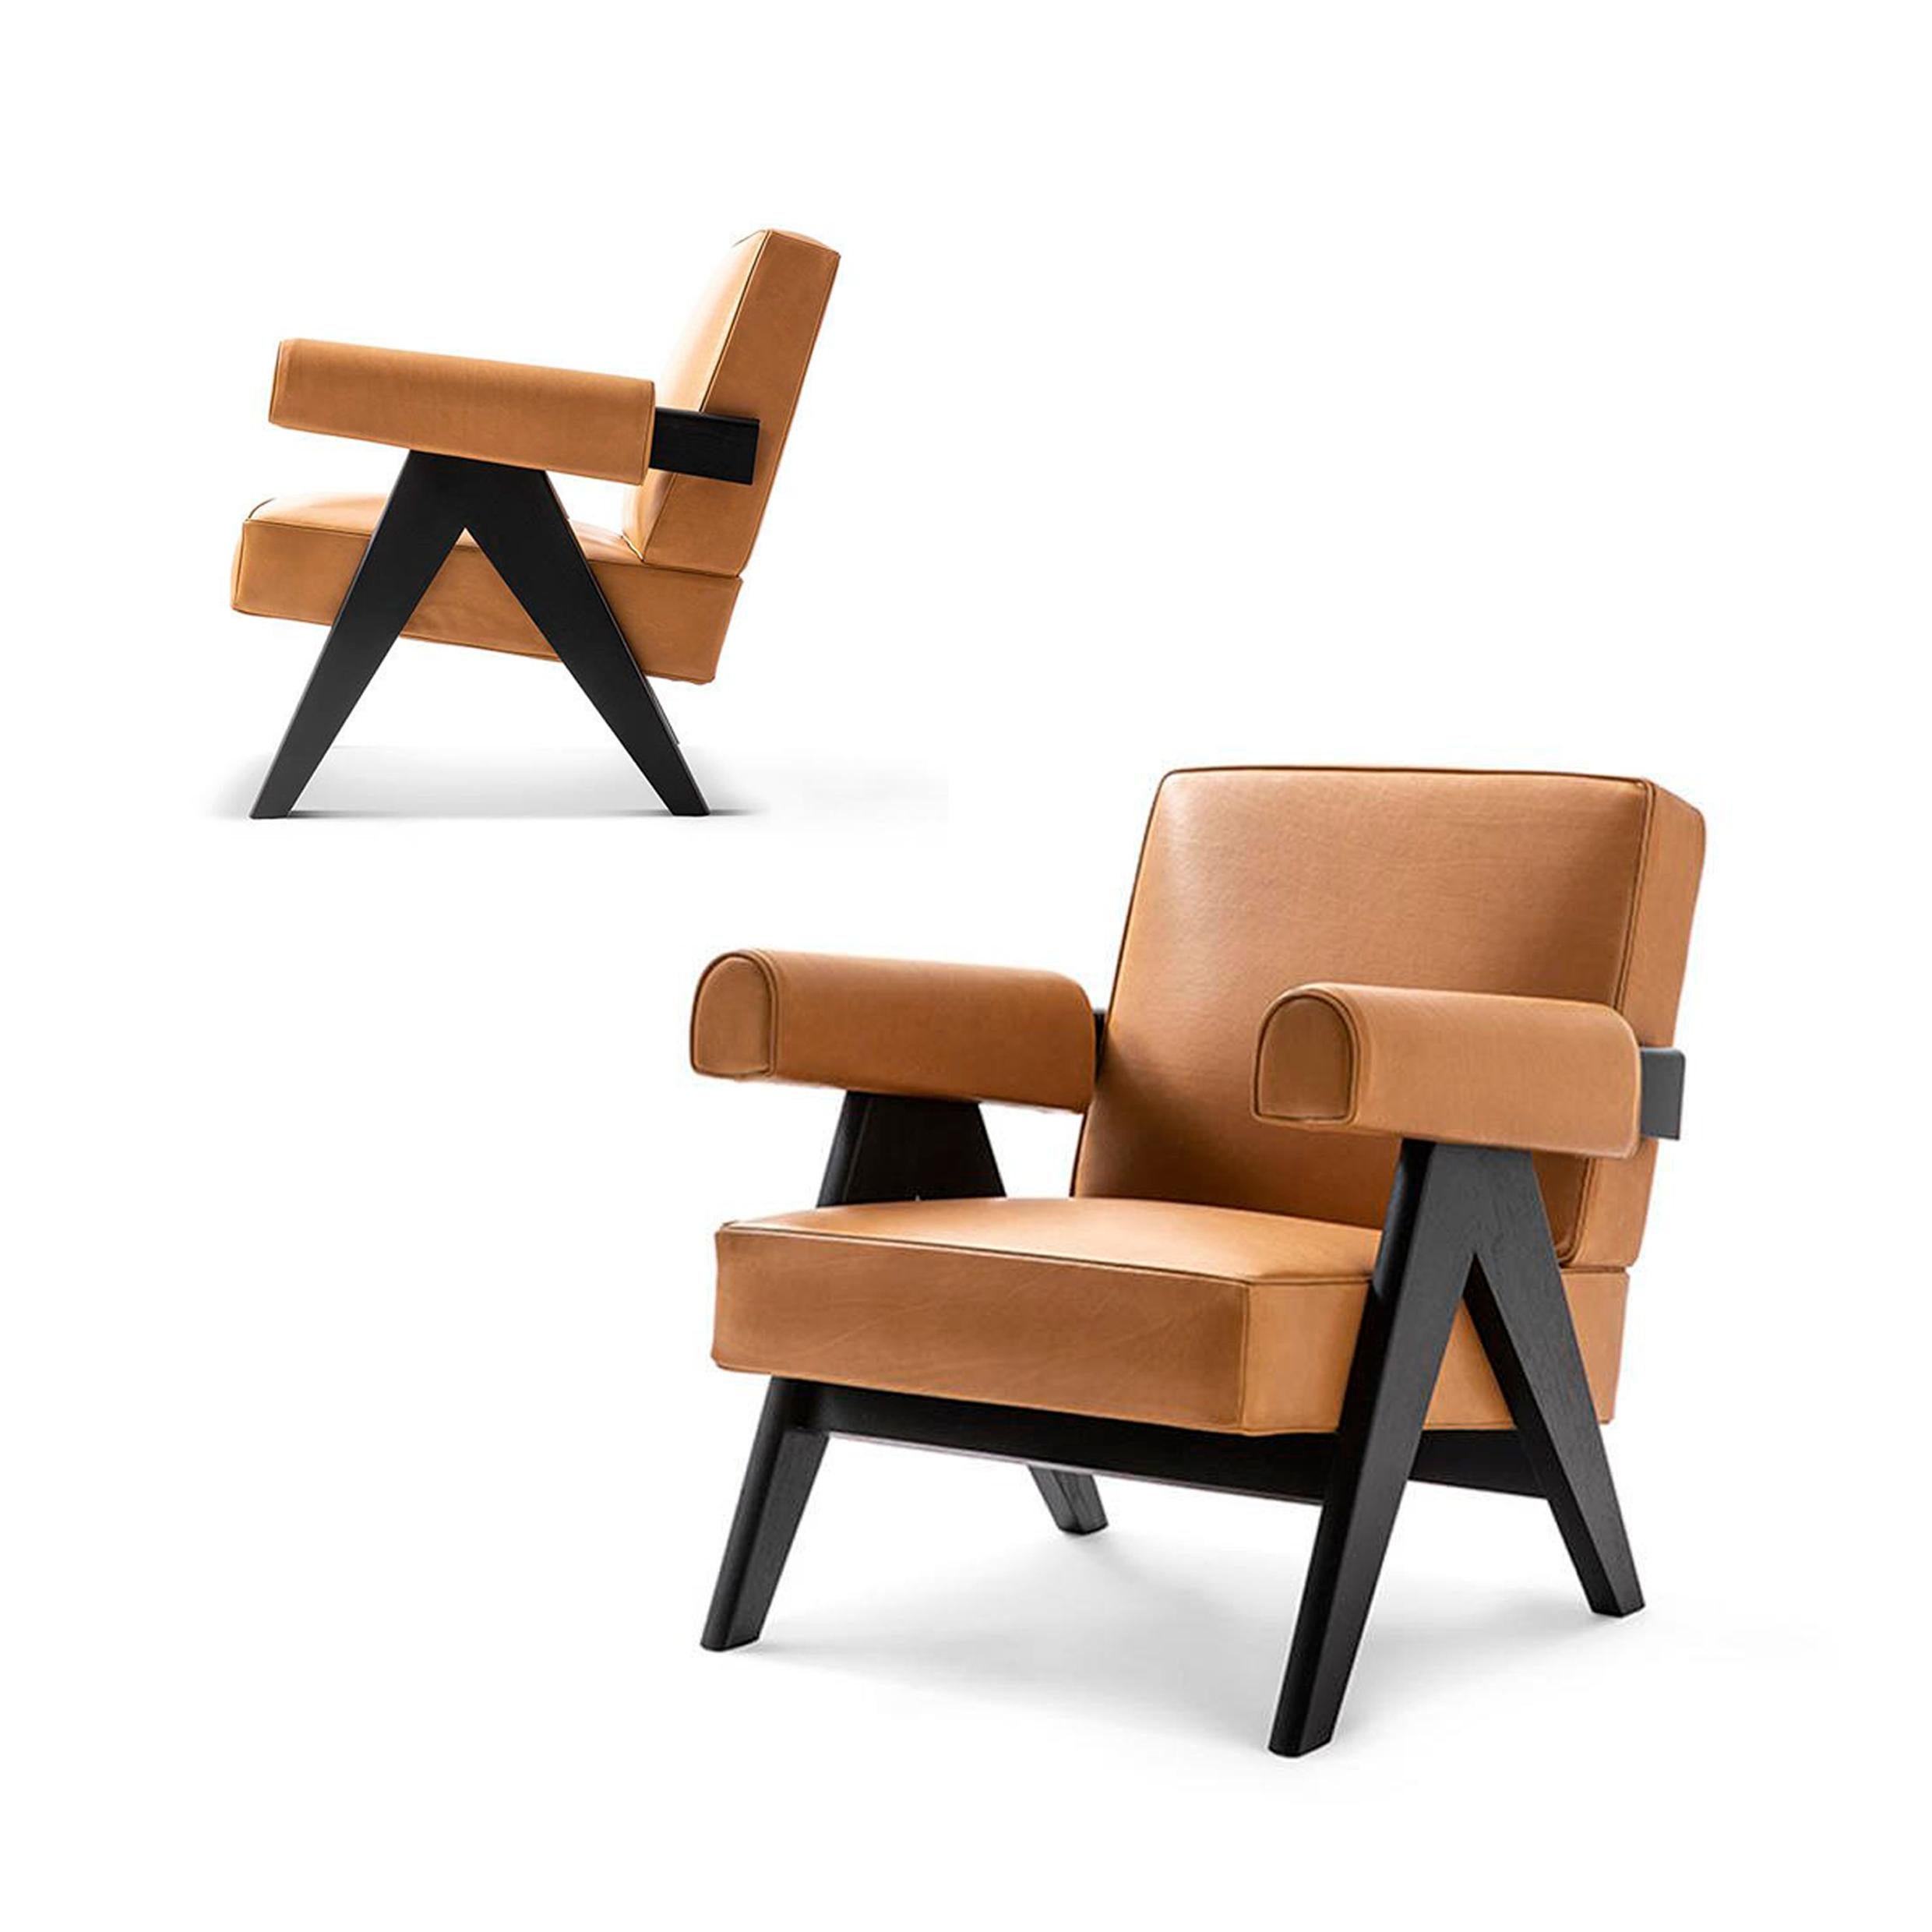 Sessel, entworfen von Pierre Jeanneret um 1950, neu aufgelegt im Jahr 2019.
Hergestellt von Cassina in Italien.

Die außergewöhnliche Architektur des 1951 von Le Corbusier entworfenen Capitol Complex in Chandigarh wurde von der UNESCO in die Liste